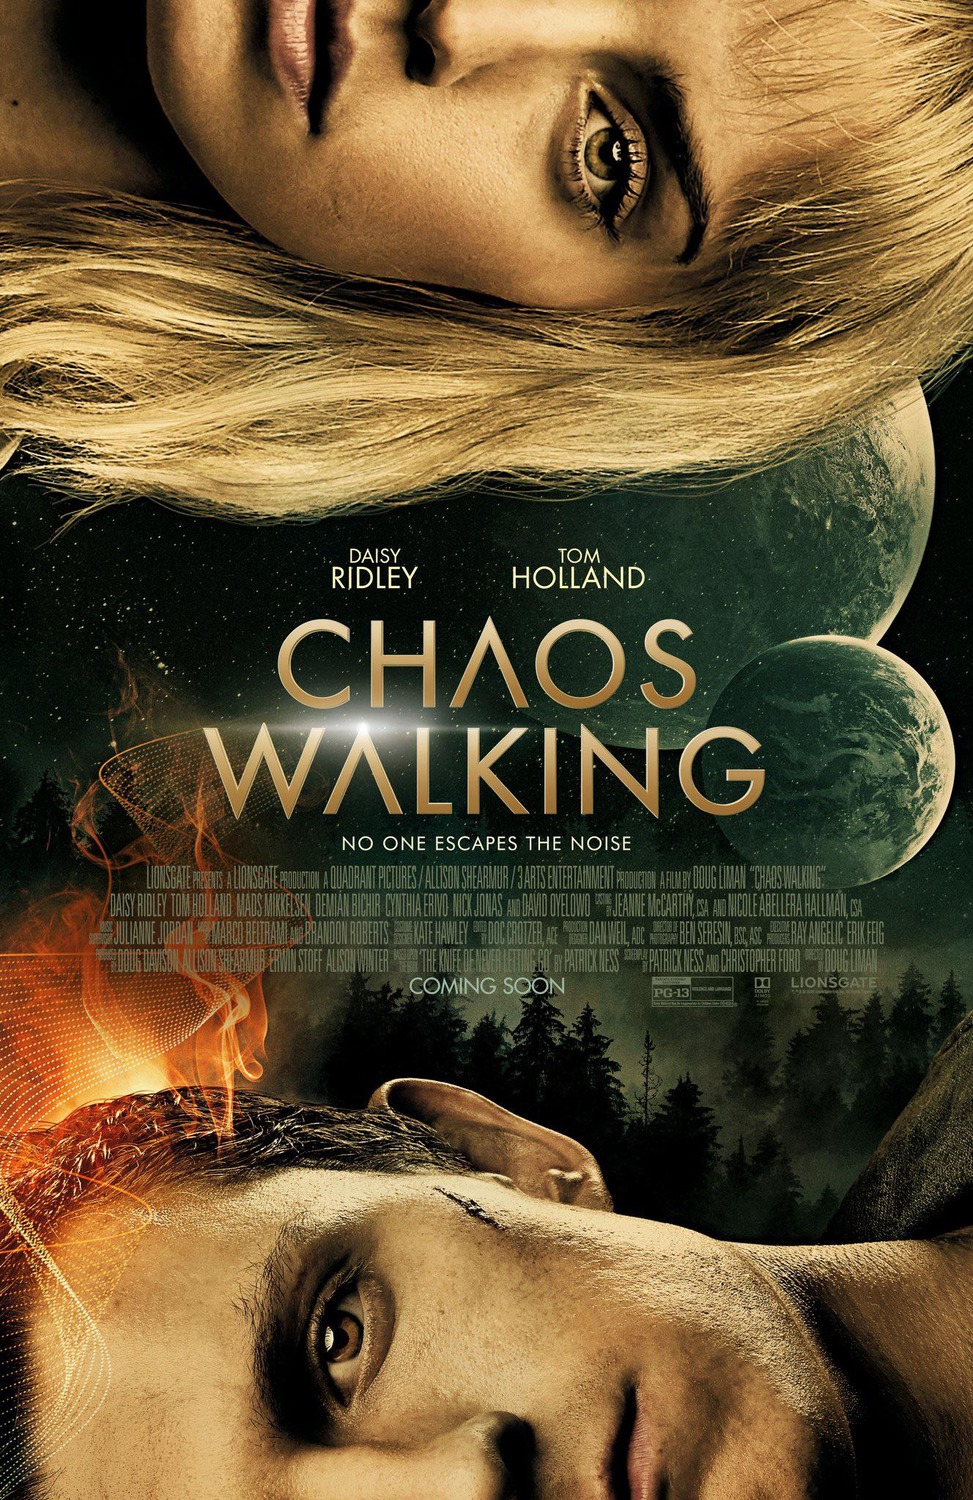 Download Chaos Walking 2021 BluRay Dual Audio Hindi ORG 1080p | 720p | 480p [350MB] download